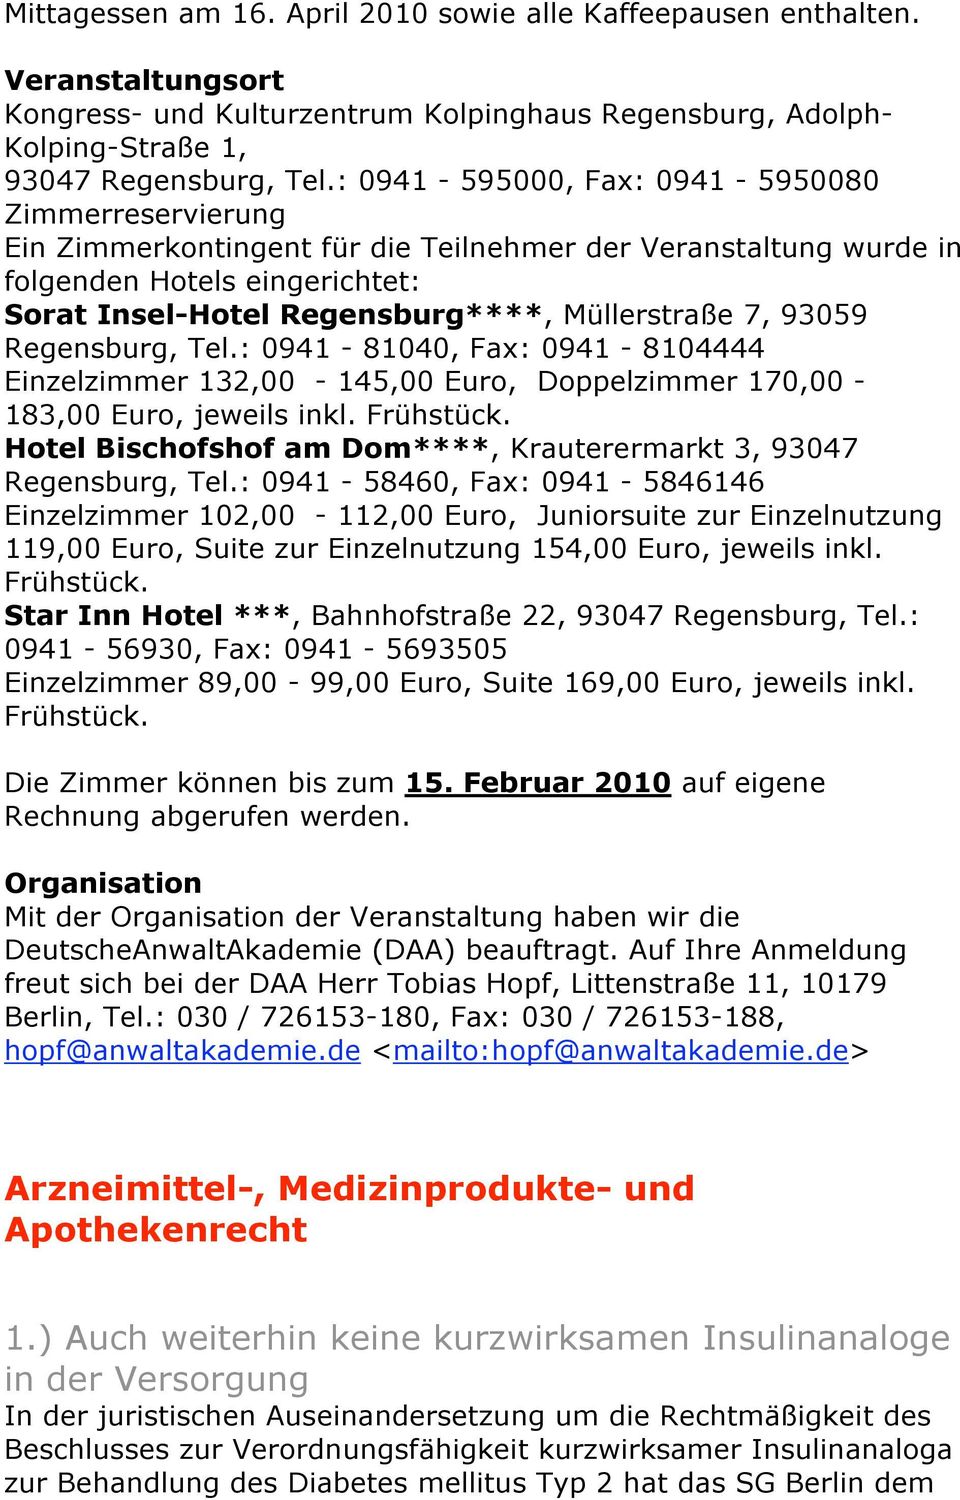 93059 Regensburg, Tel.: 0941-81040, Fax: 0941-8104444 Einzelzimmer 132,00-145,00 Euro, Doppelzimmer 170,00-183,00 Euro, jeweils inkl. Frühstück.